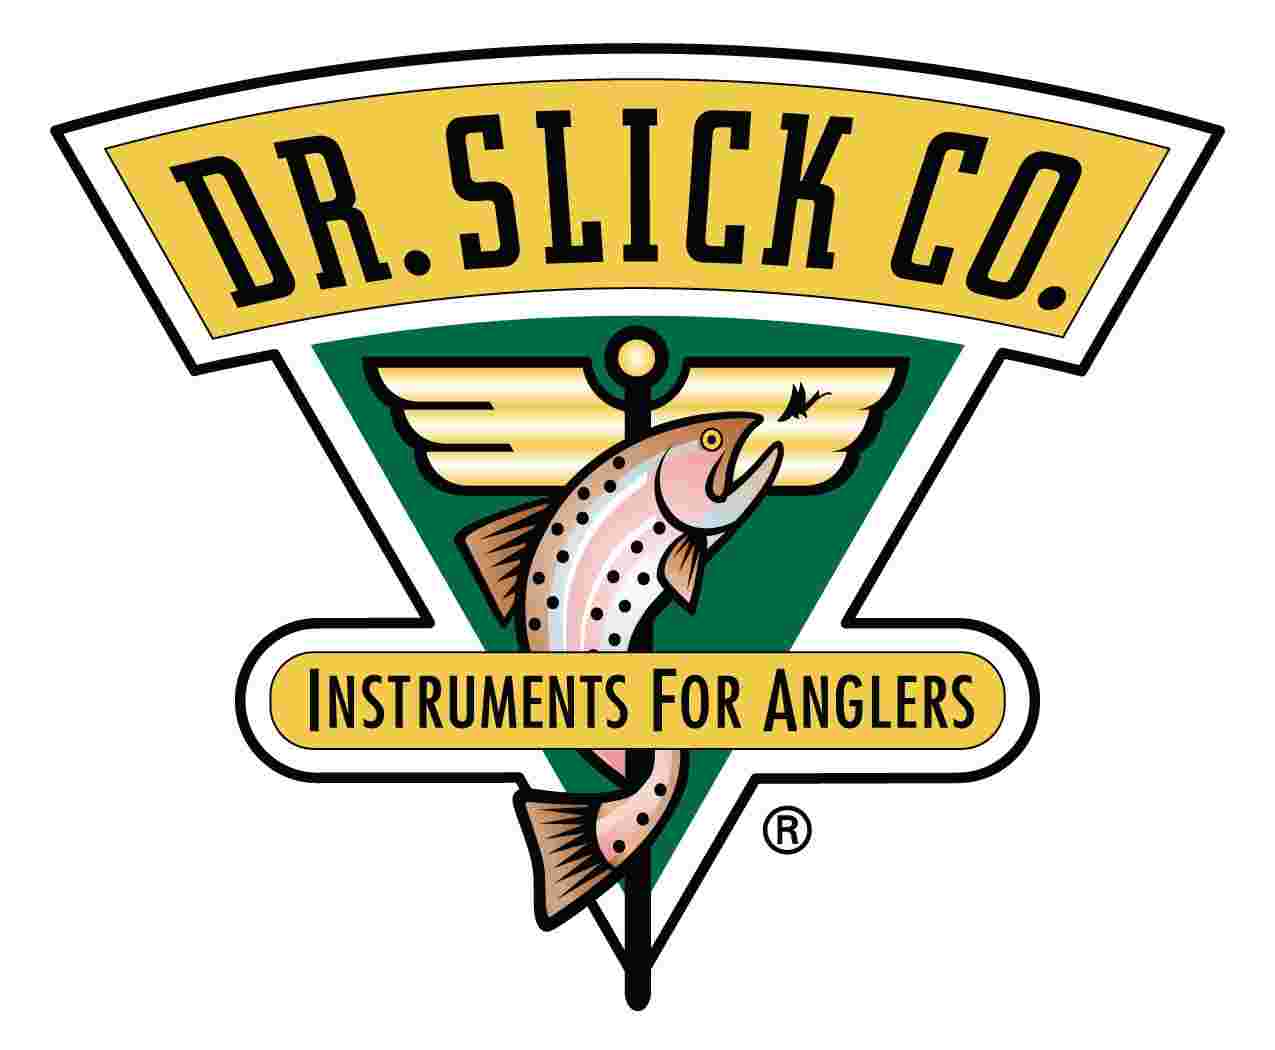 Dr. SLICK